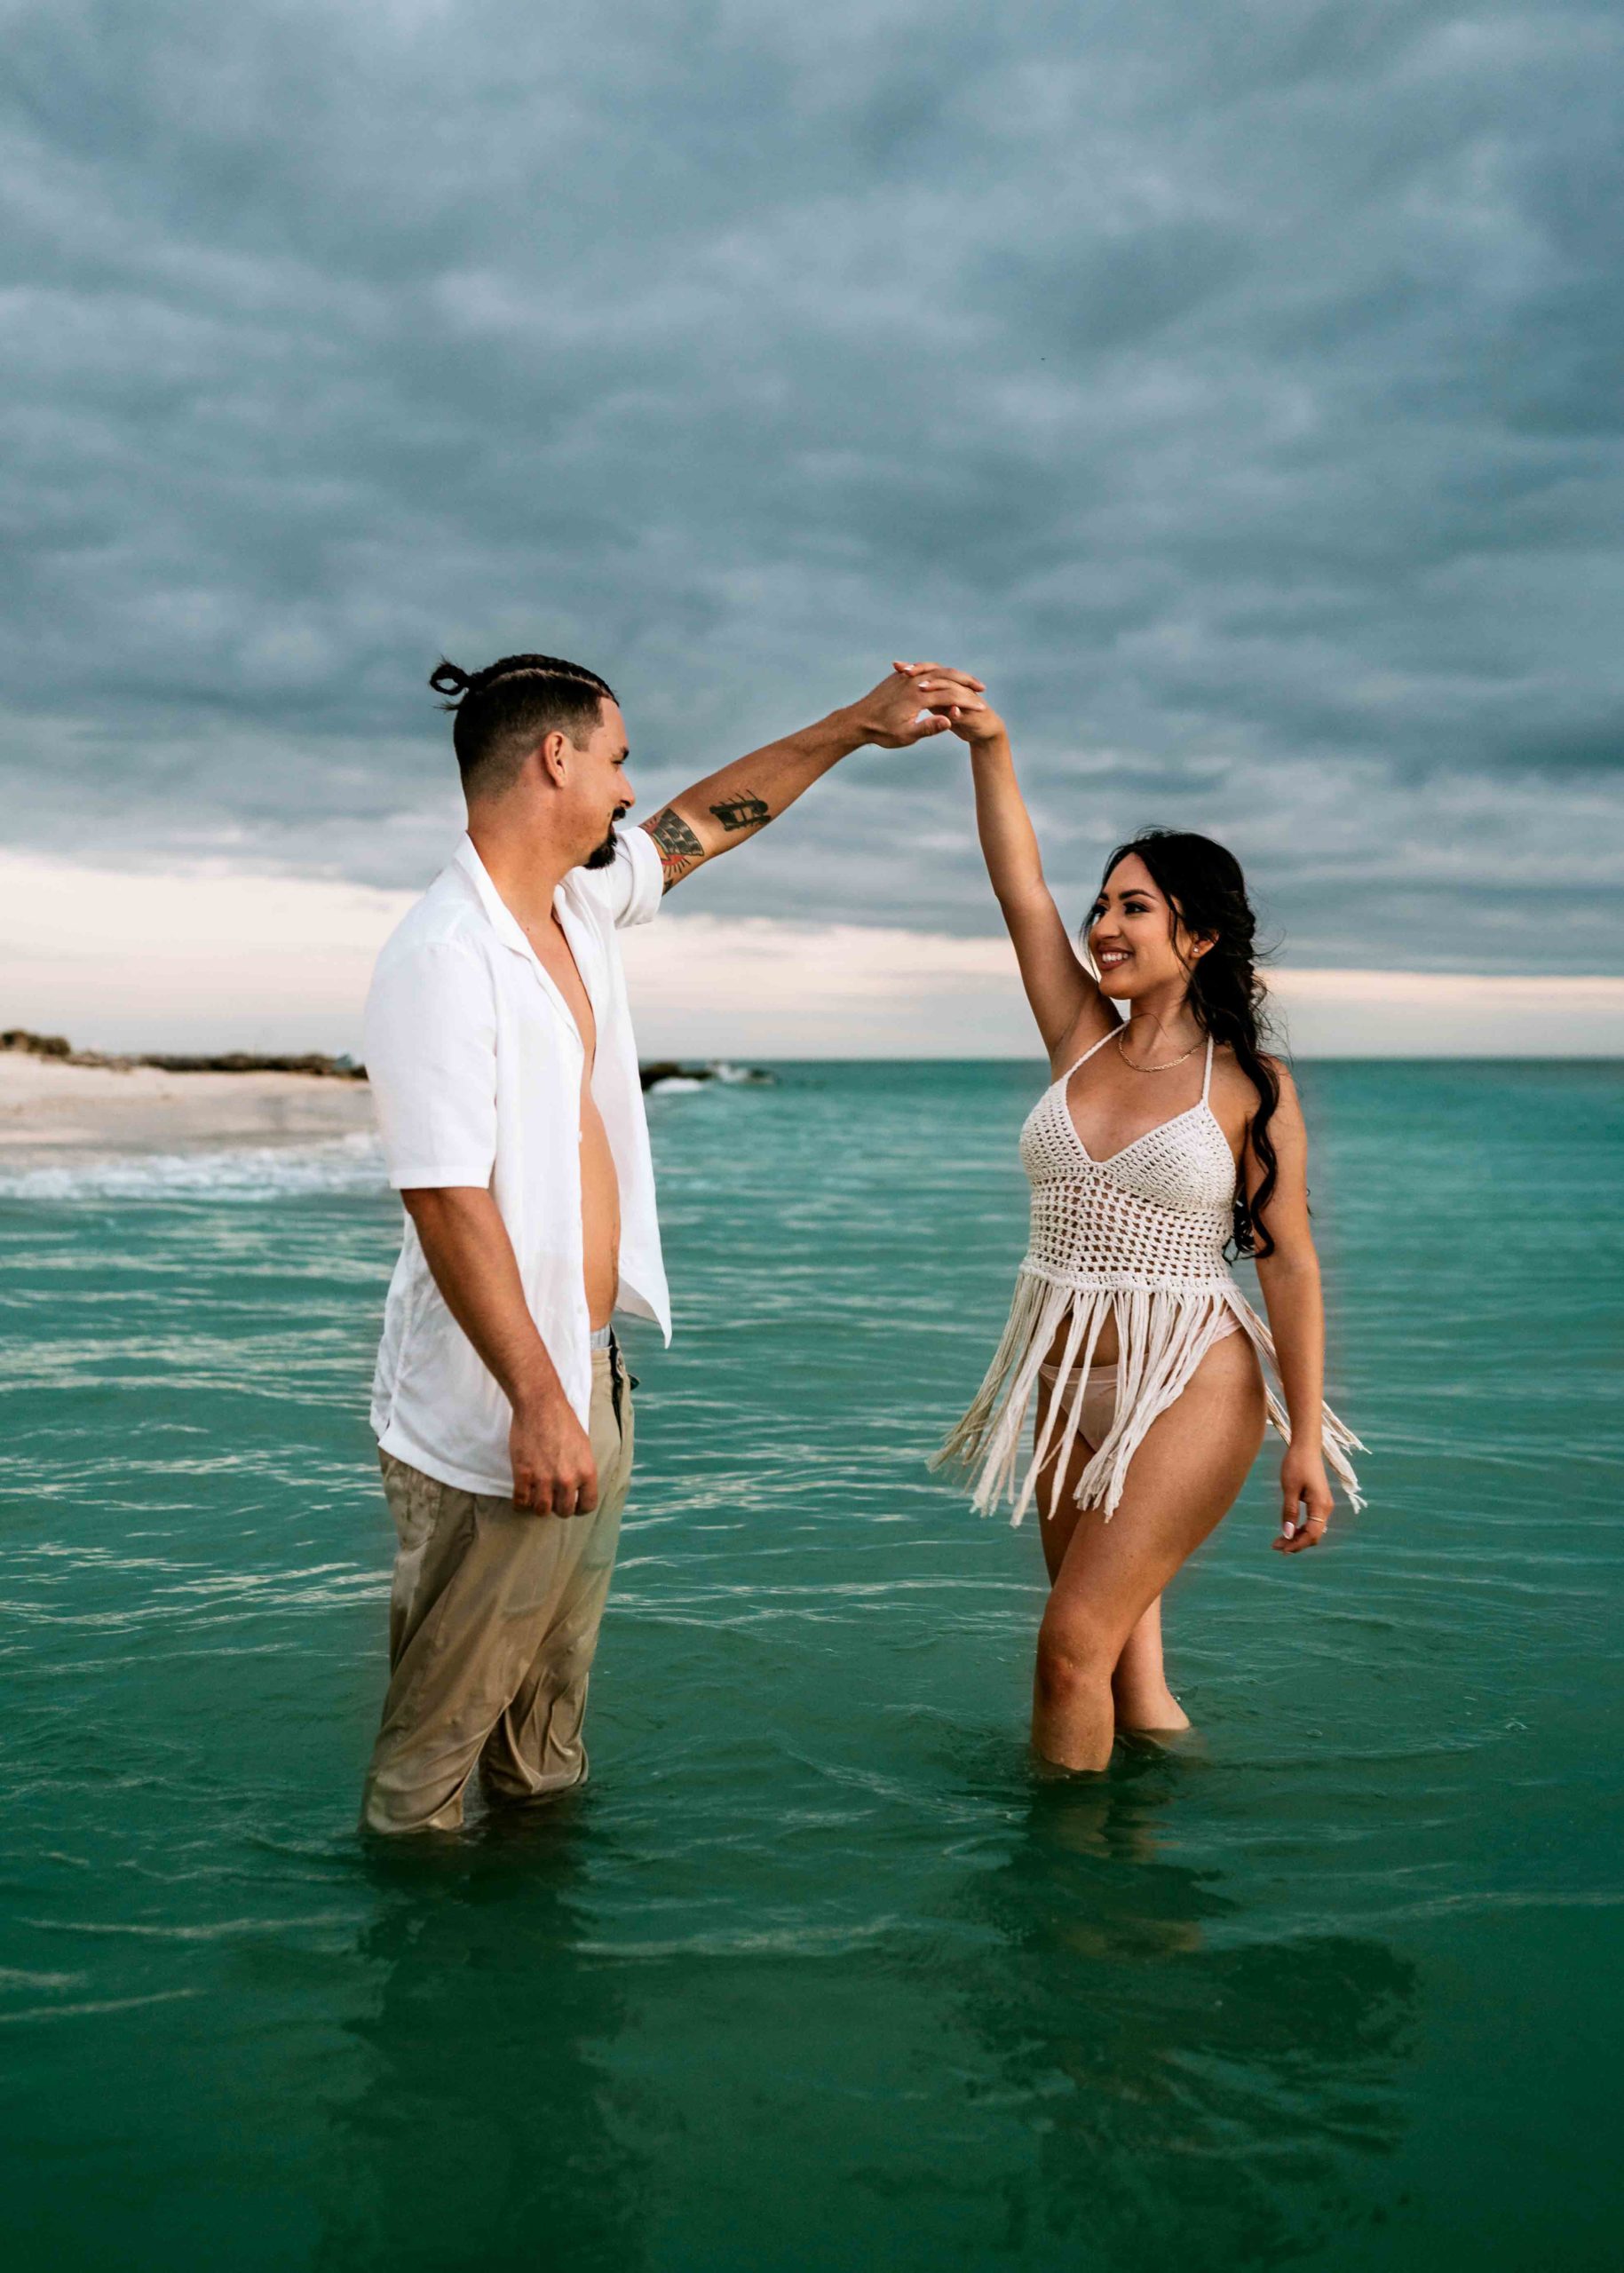 Couple-dancing-ocean-Photoshoot-miami-beach-florida